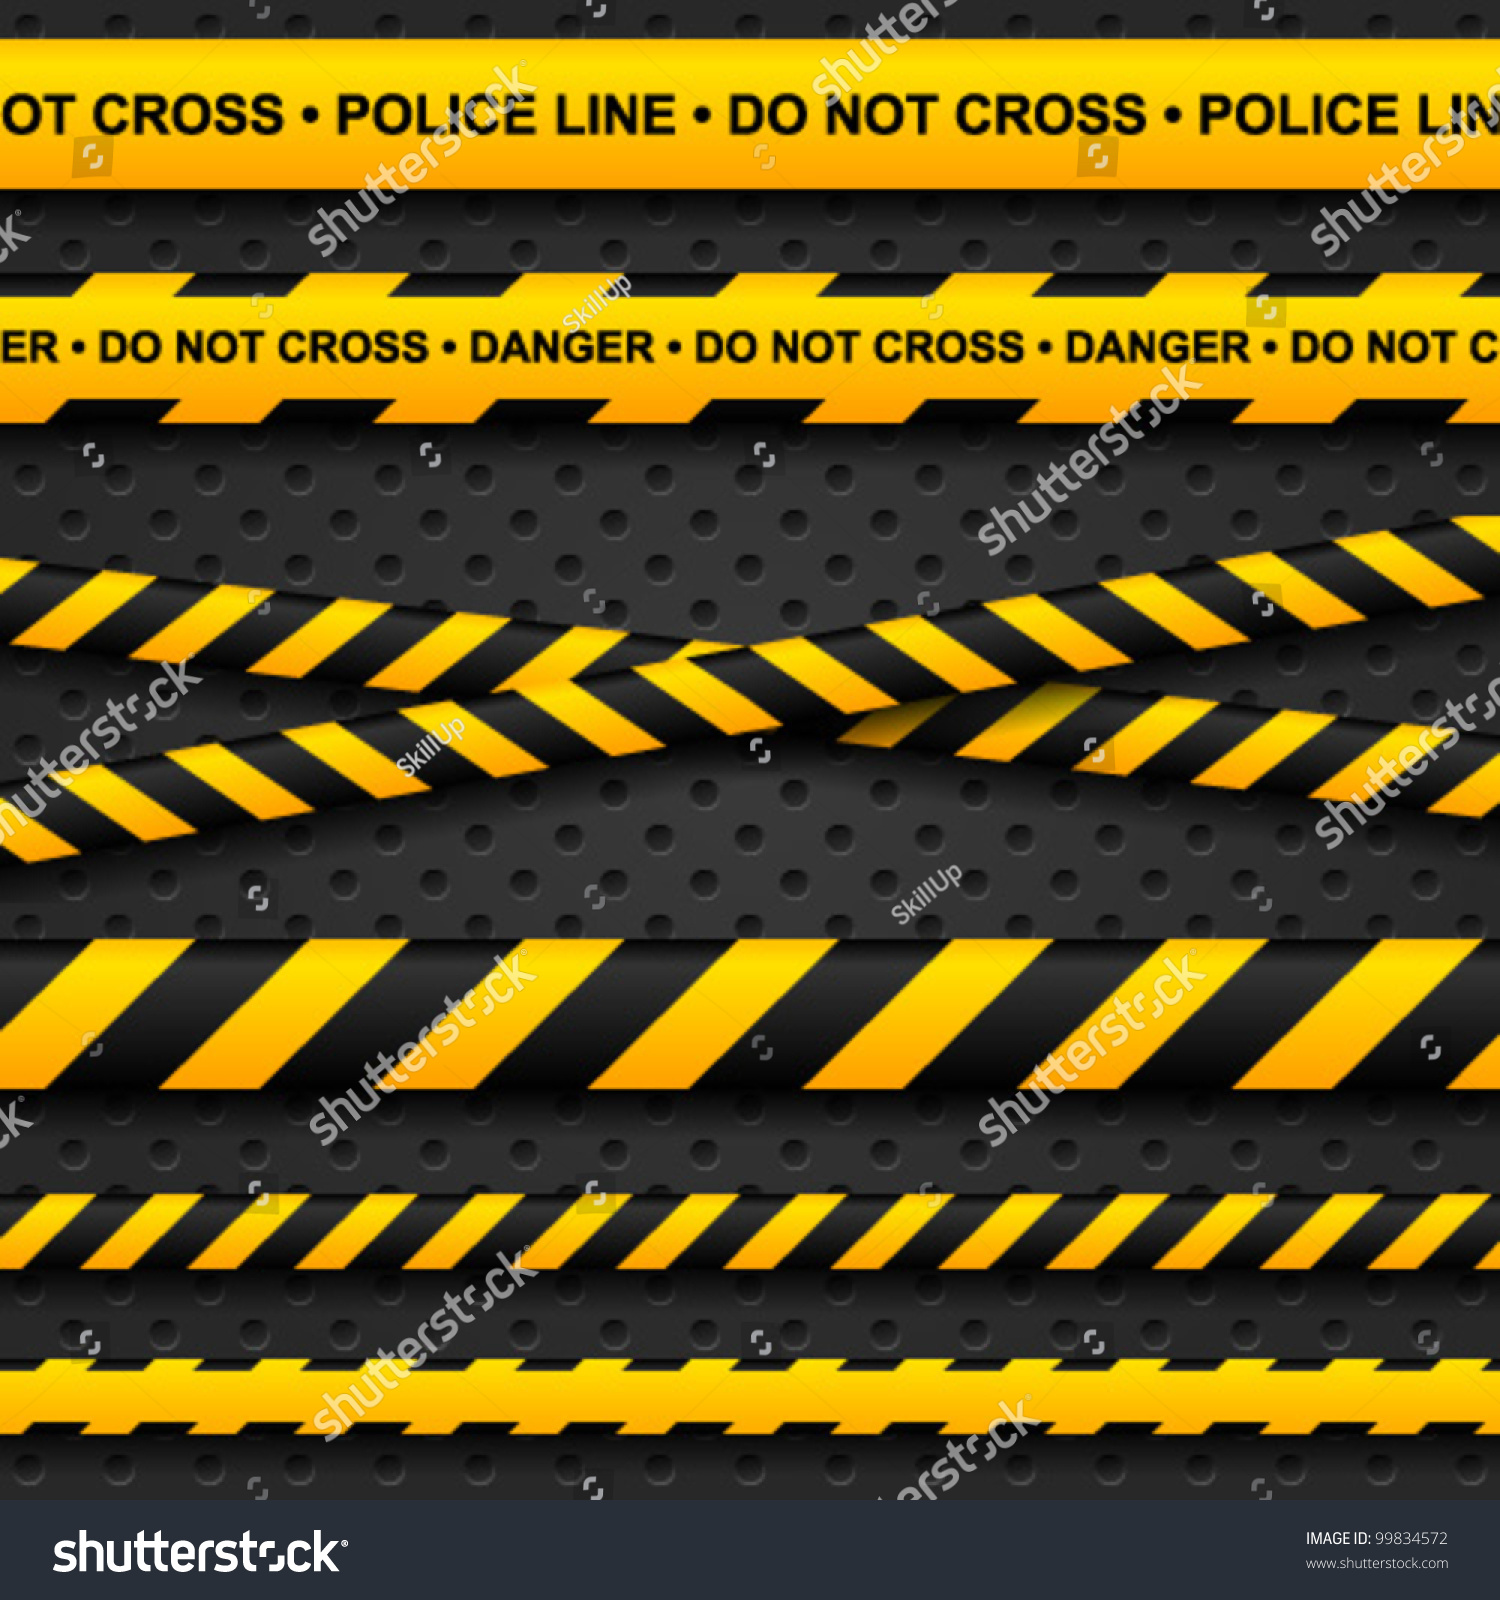 SVG of Police line and danger tapes on dark background. Vector illustration. svg